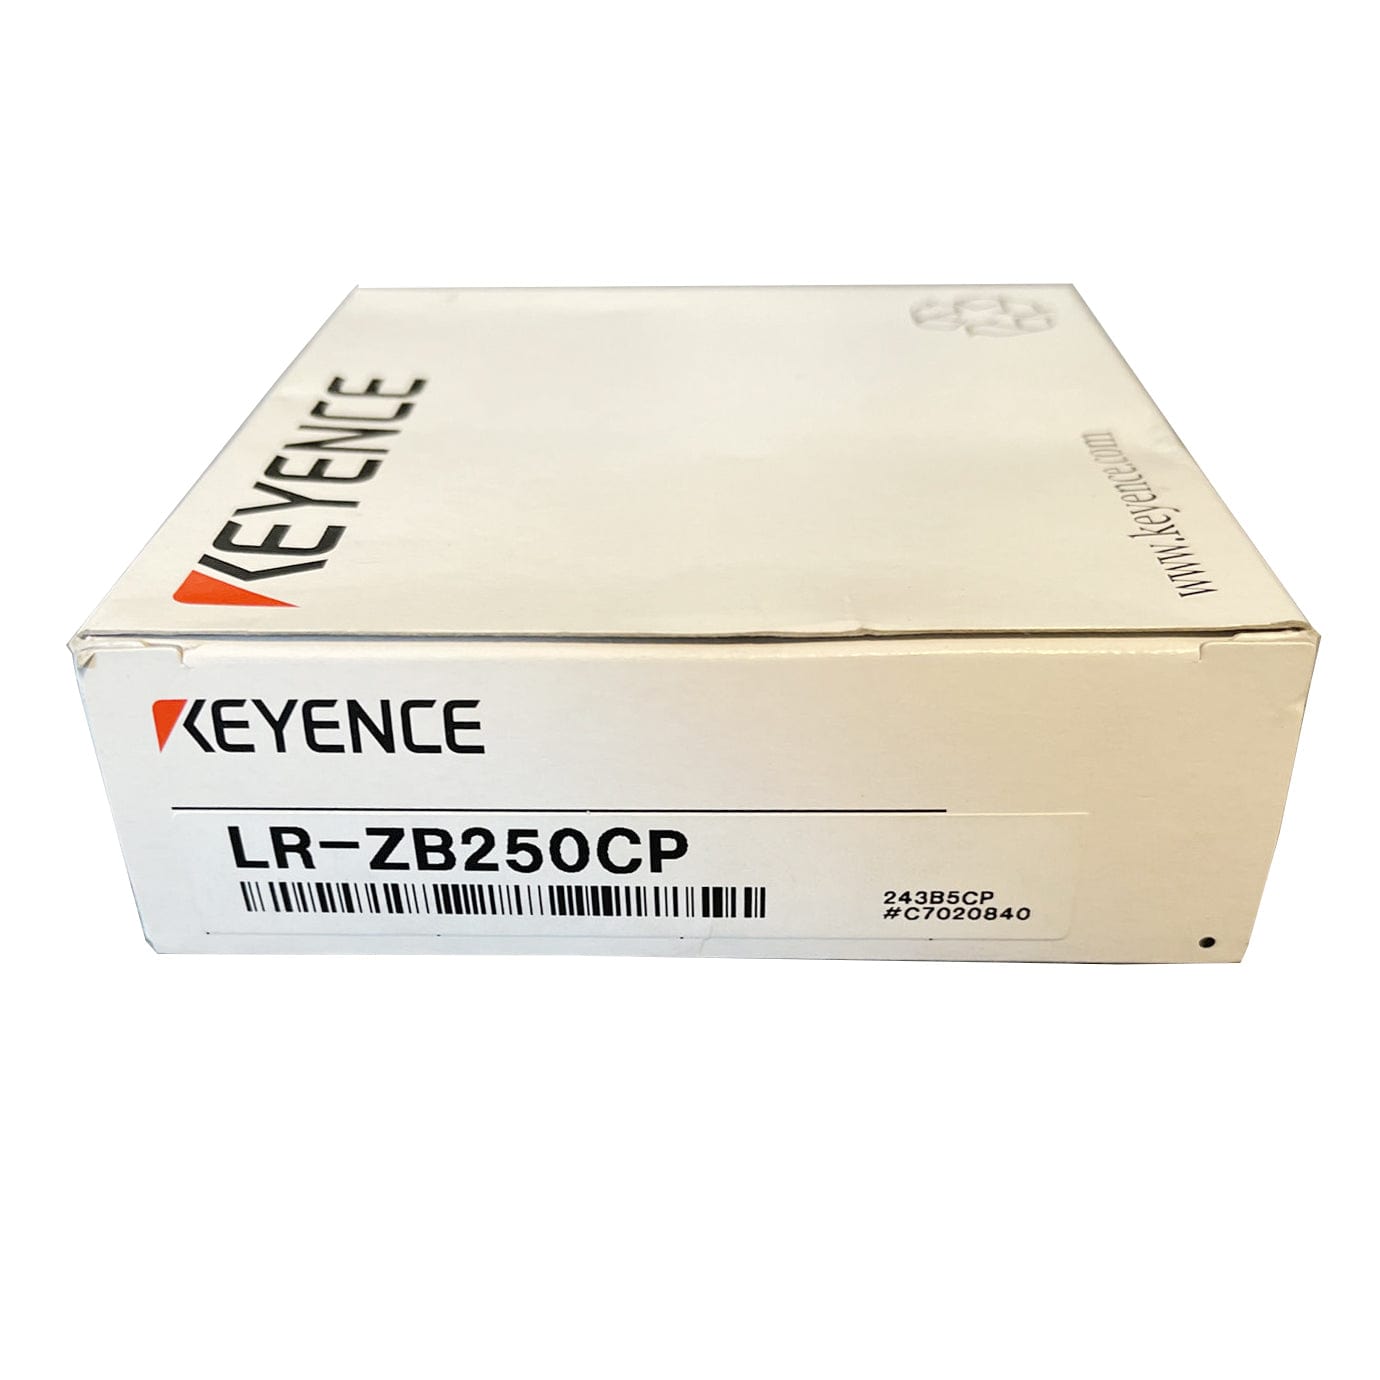 Keyence LR-ZB250CP